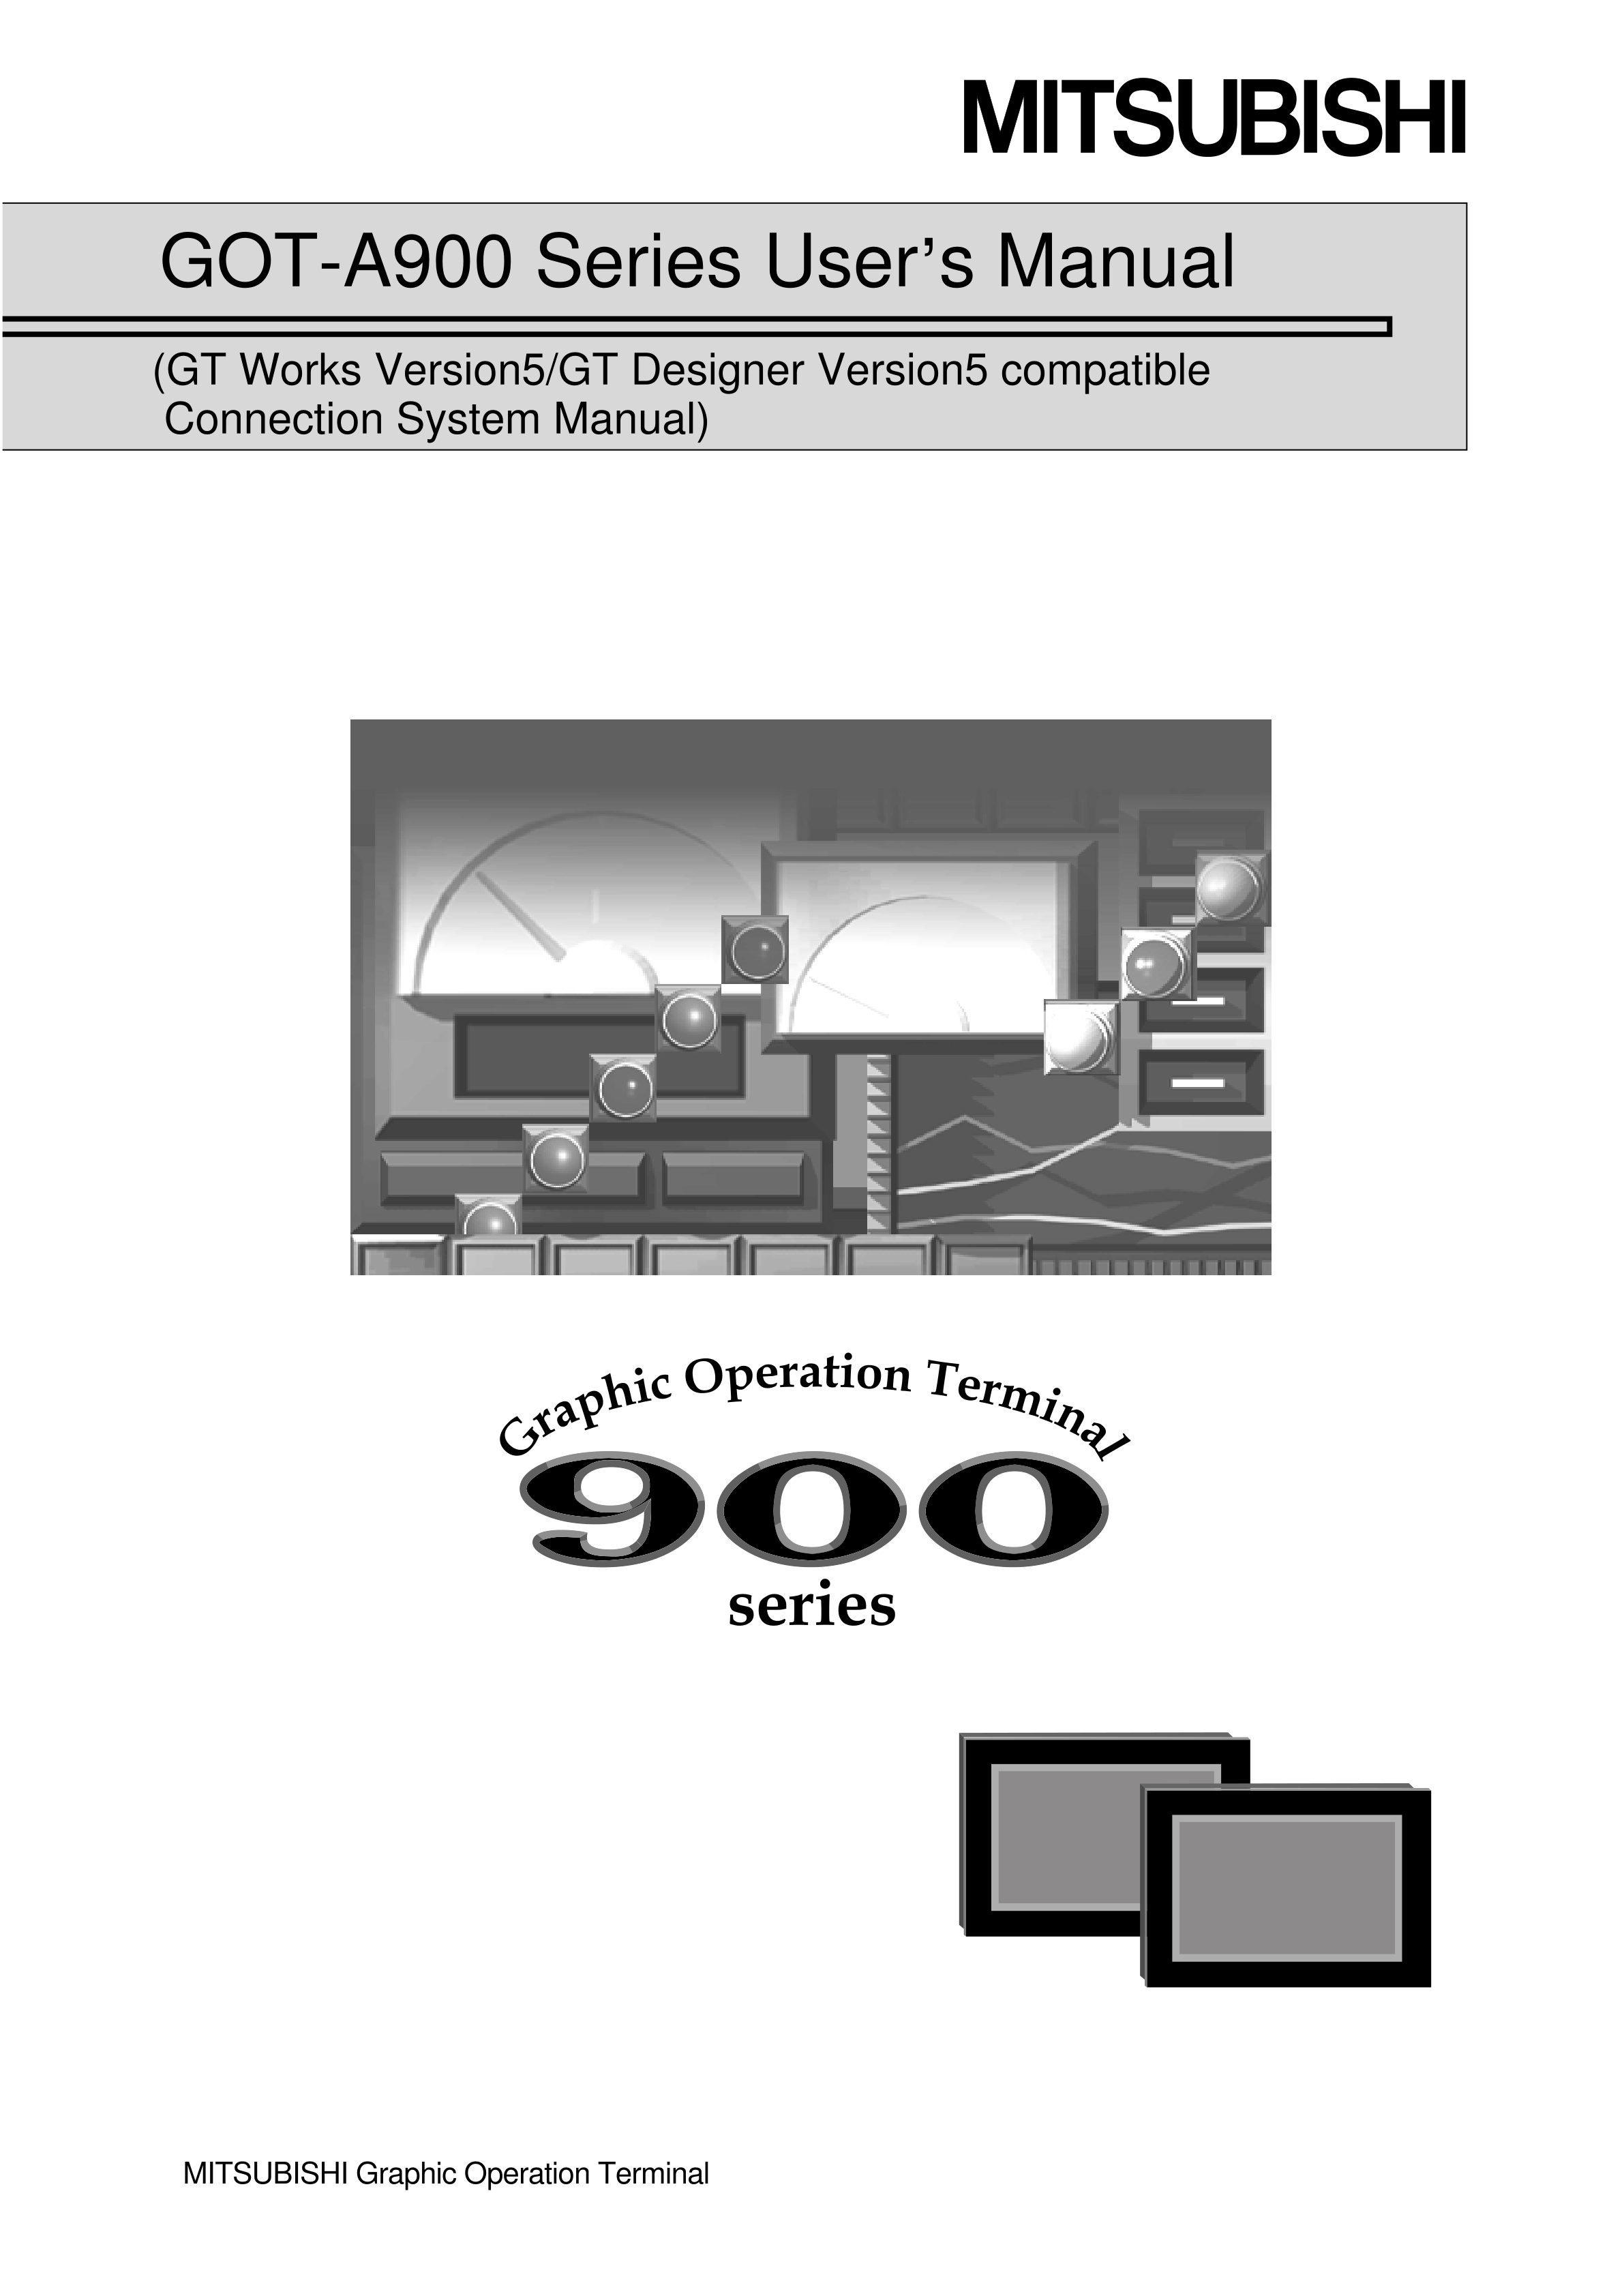 三菱Q66DA-G用户手册隔离通道模拟量模块手册_广州菱控